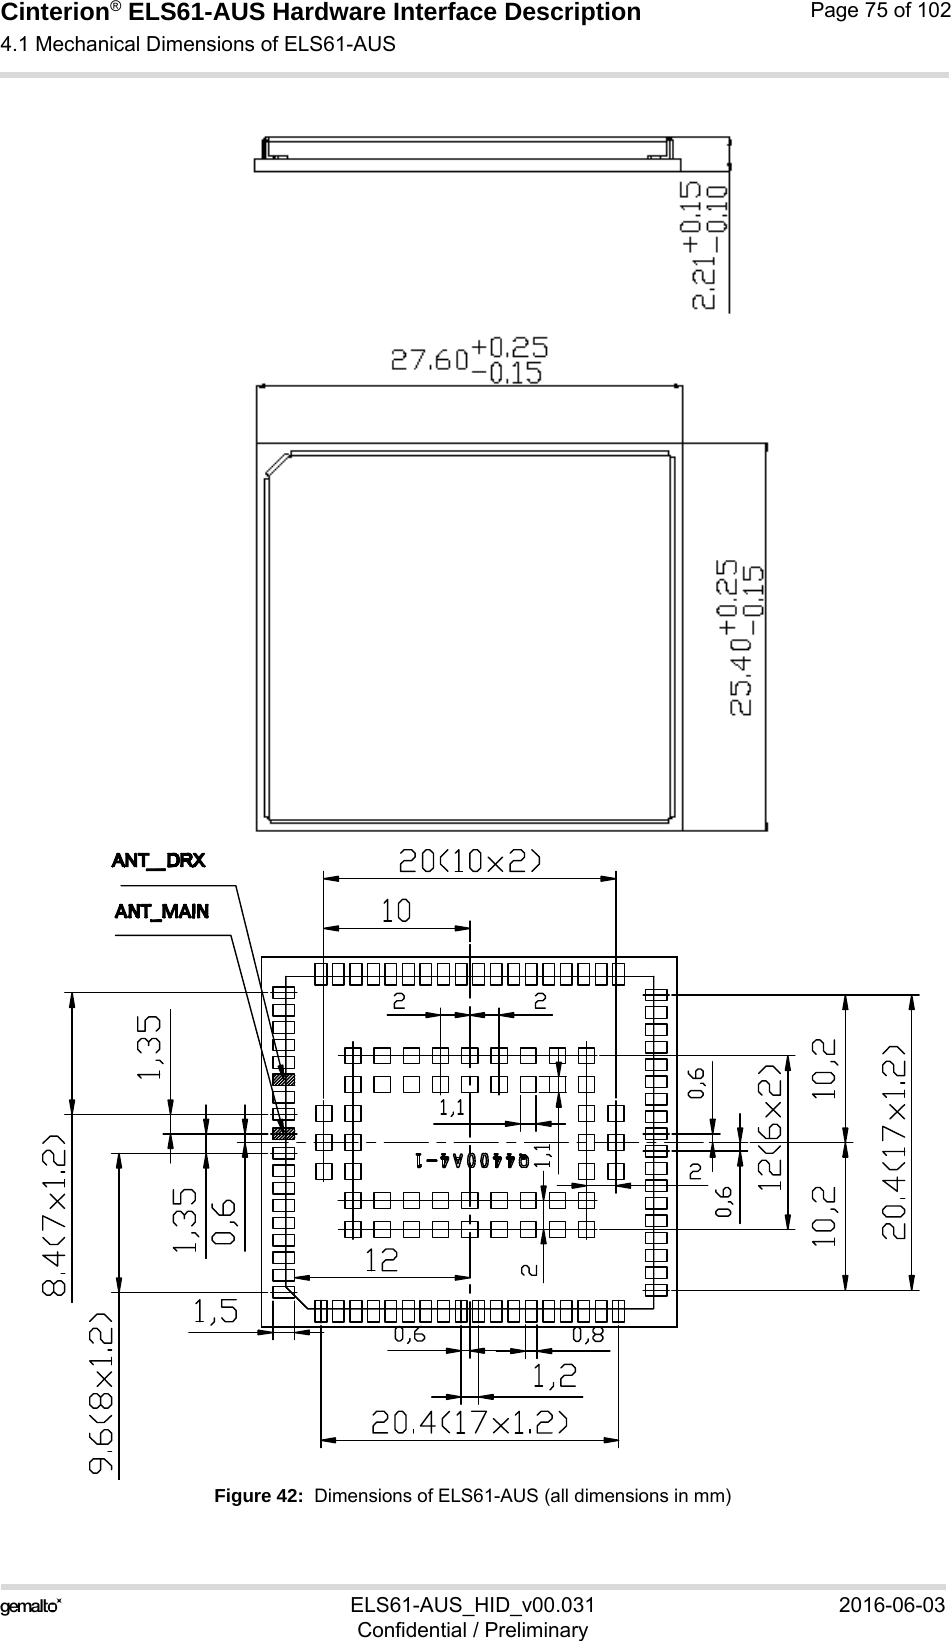 Cinterion® ELS61-AUS Hardware Interface Description4.1 Mechanical Dimensions of ELS61-AUS88ELS61-AUS_HID_v00.031 2016-06-03Confidential / PreliminaryPage 75 of 102Figure 42:  Dimensions of ELS61-AUS (all dimensions in mm)